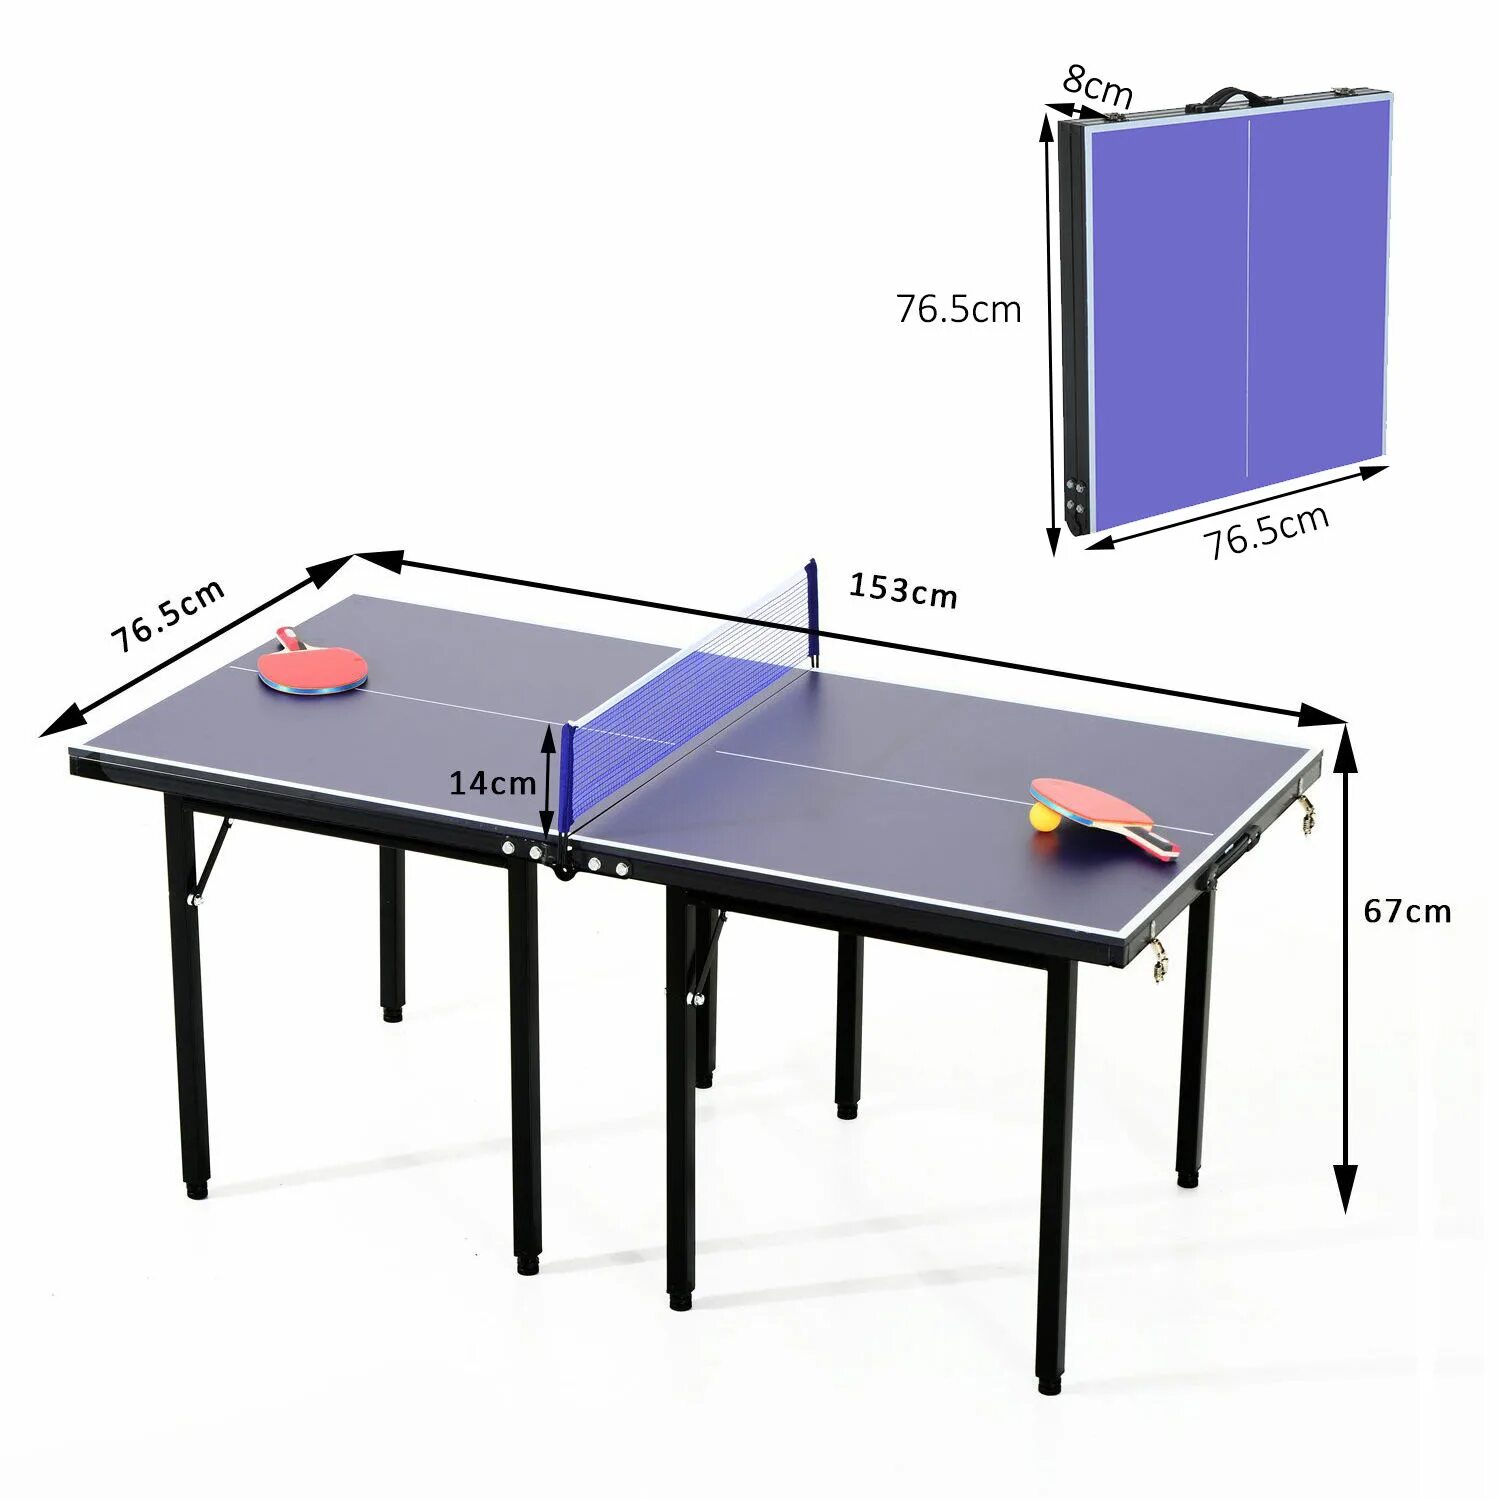 Мини стол для пинг понга. Теннисный стол Юниор. Стол для настольного тенниса Юниор. Стол для ПИНКПОНГА 1,5/1,5. Стол для пинпонга